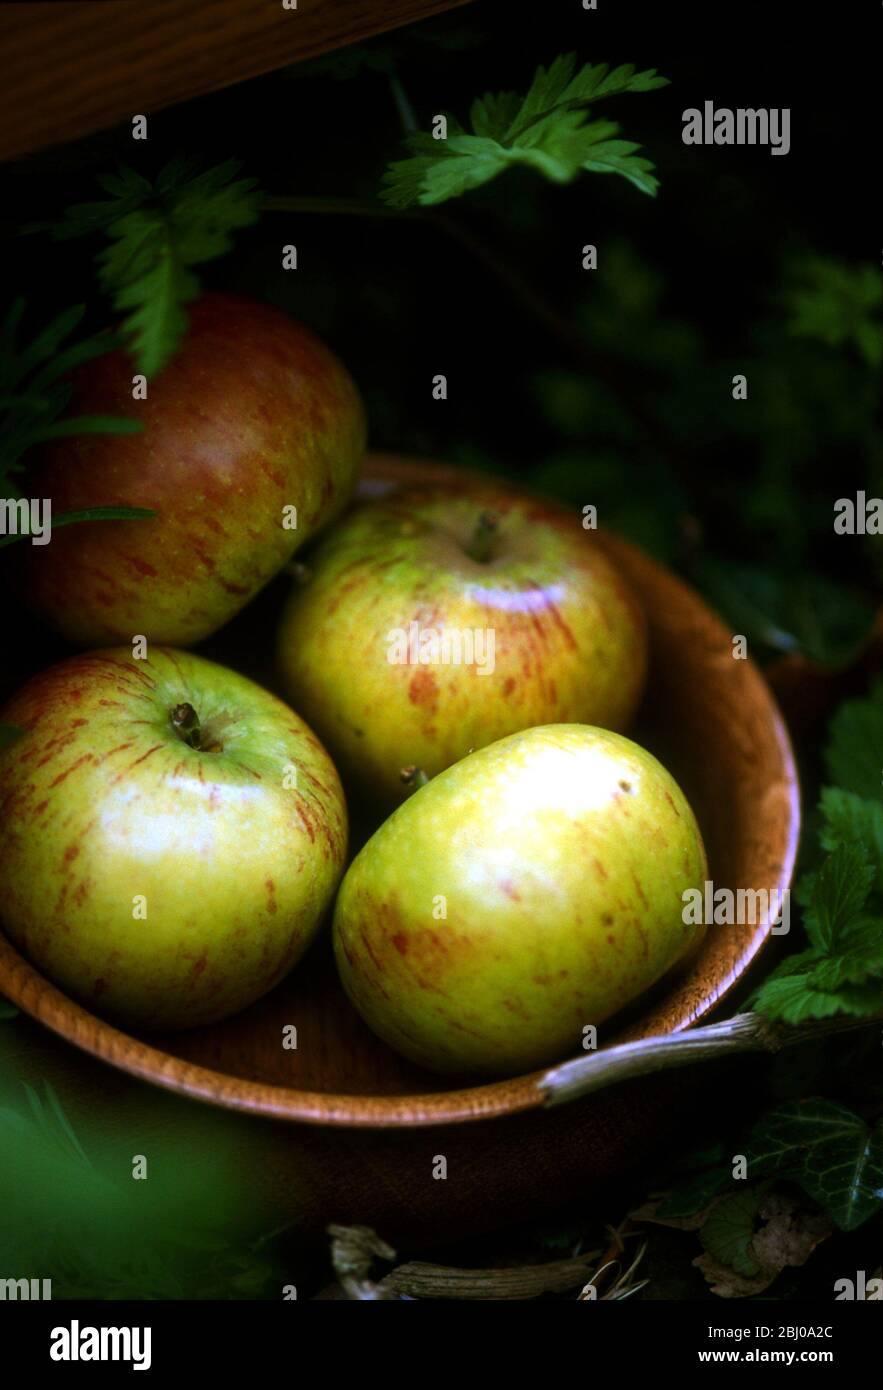 Kleine Holzschale von Cox's orange pippins Äpfel im Freien - Stockfoto